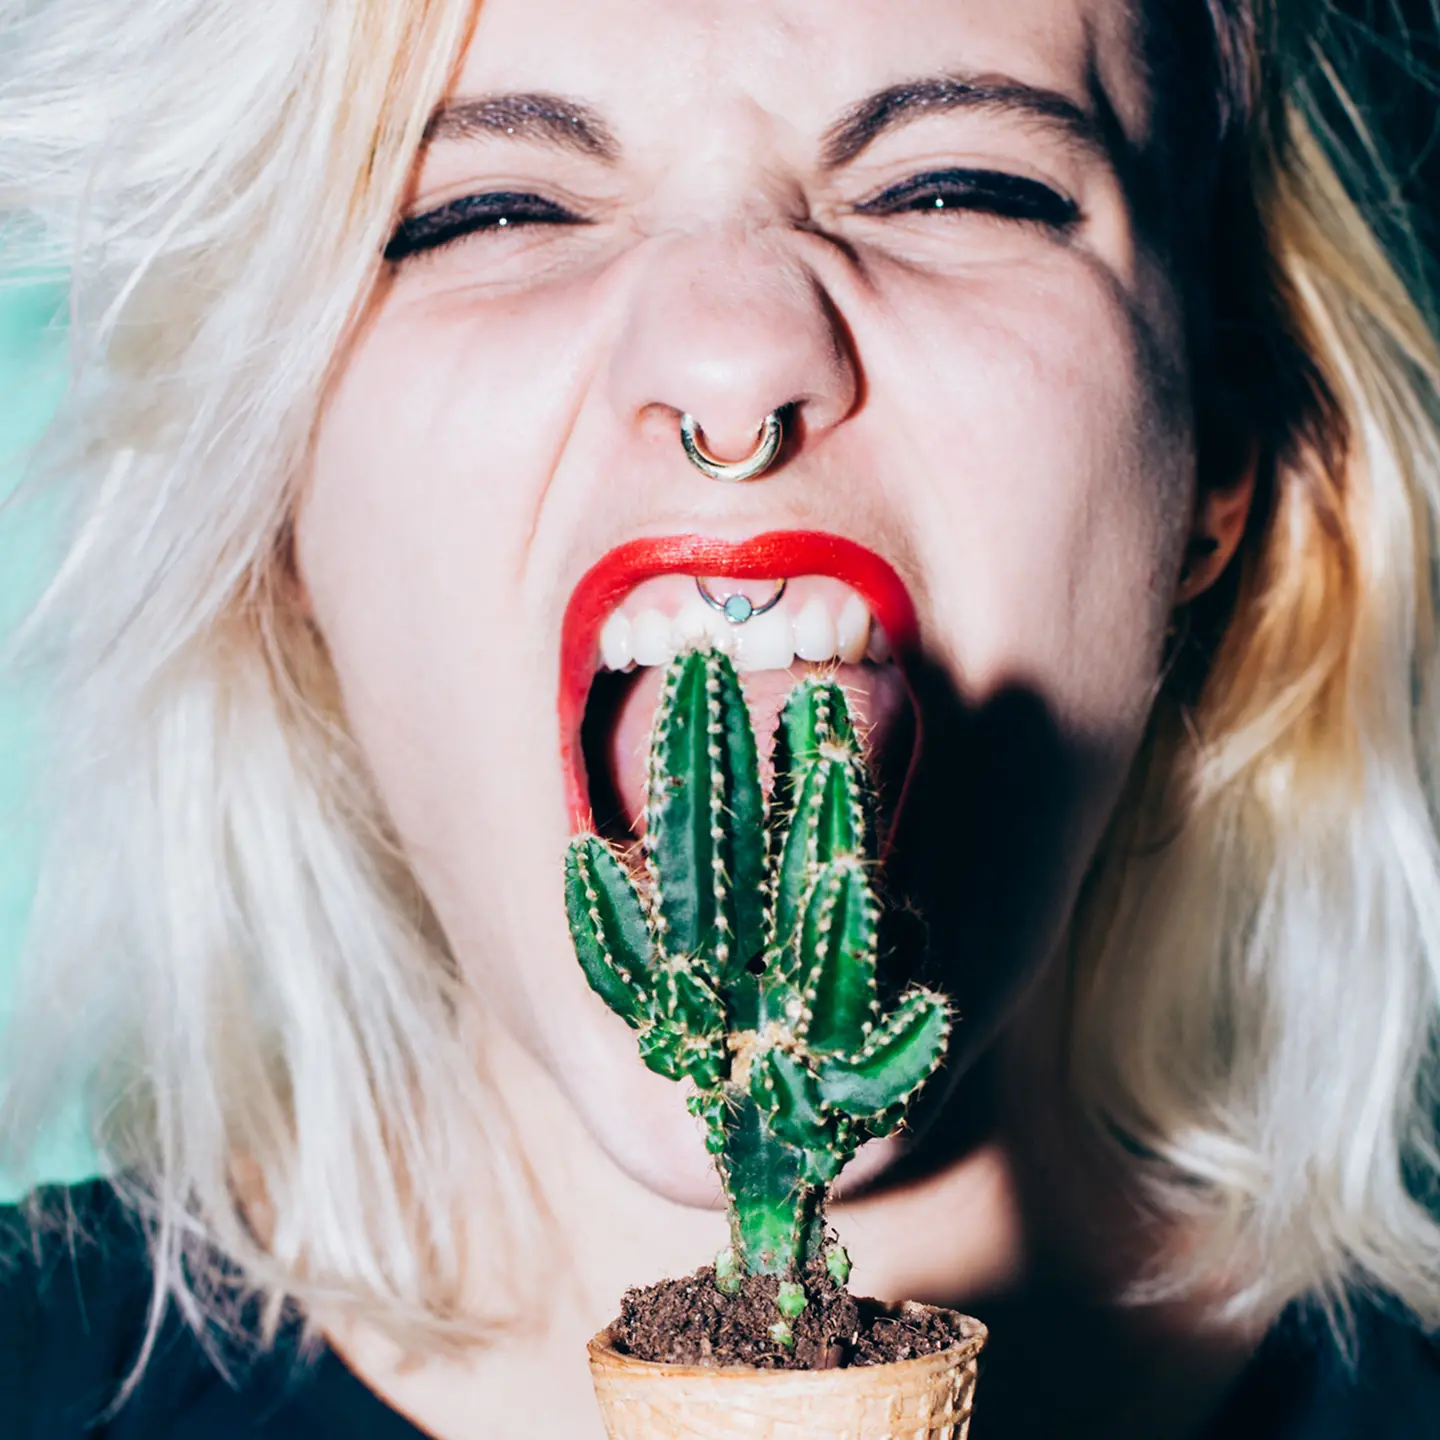 Eine junge Frau beißt in einen Kaktus